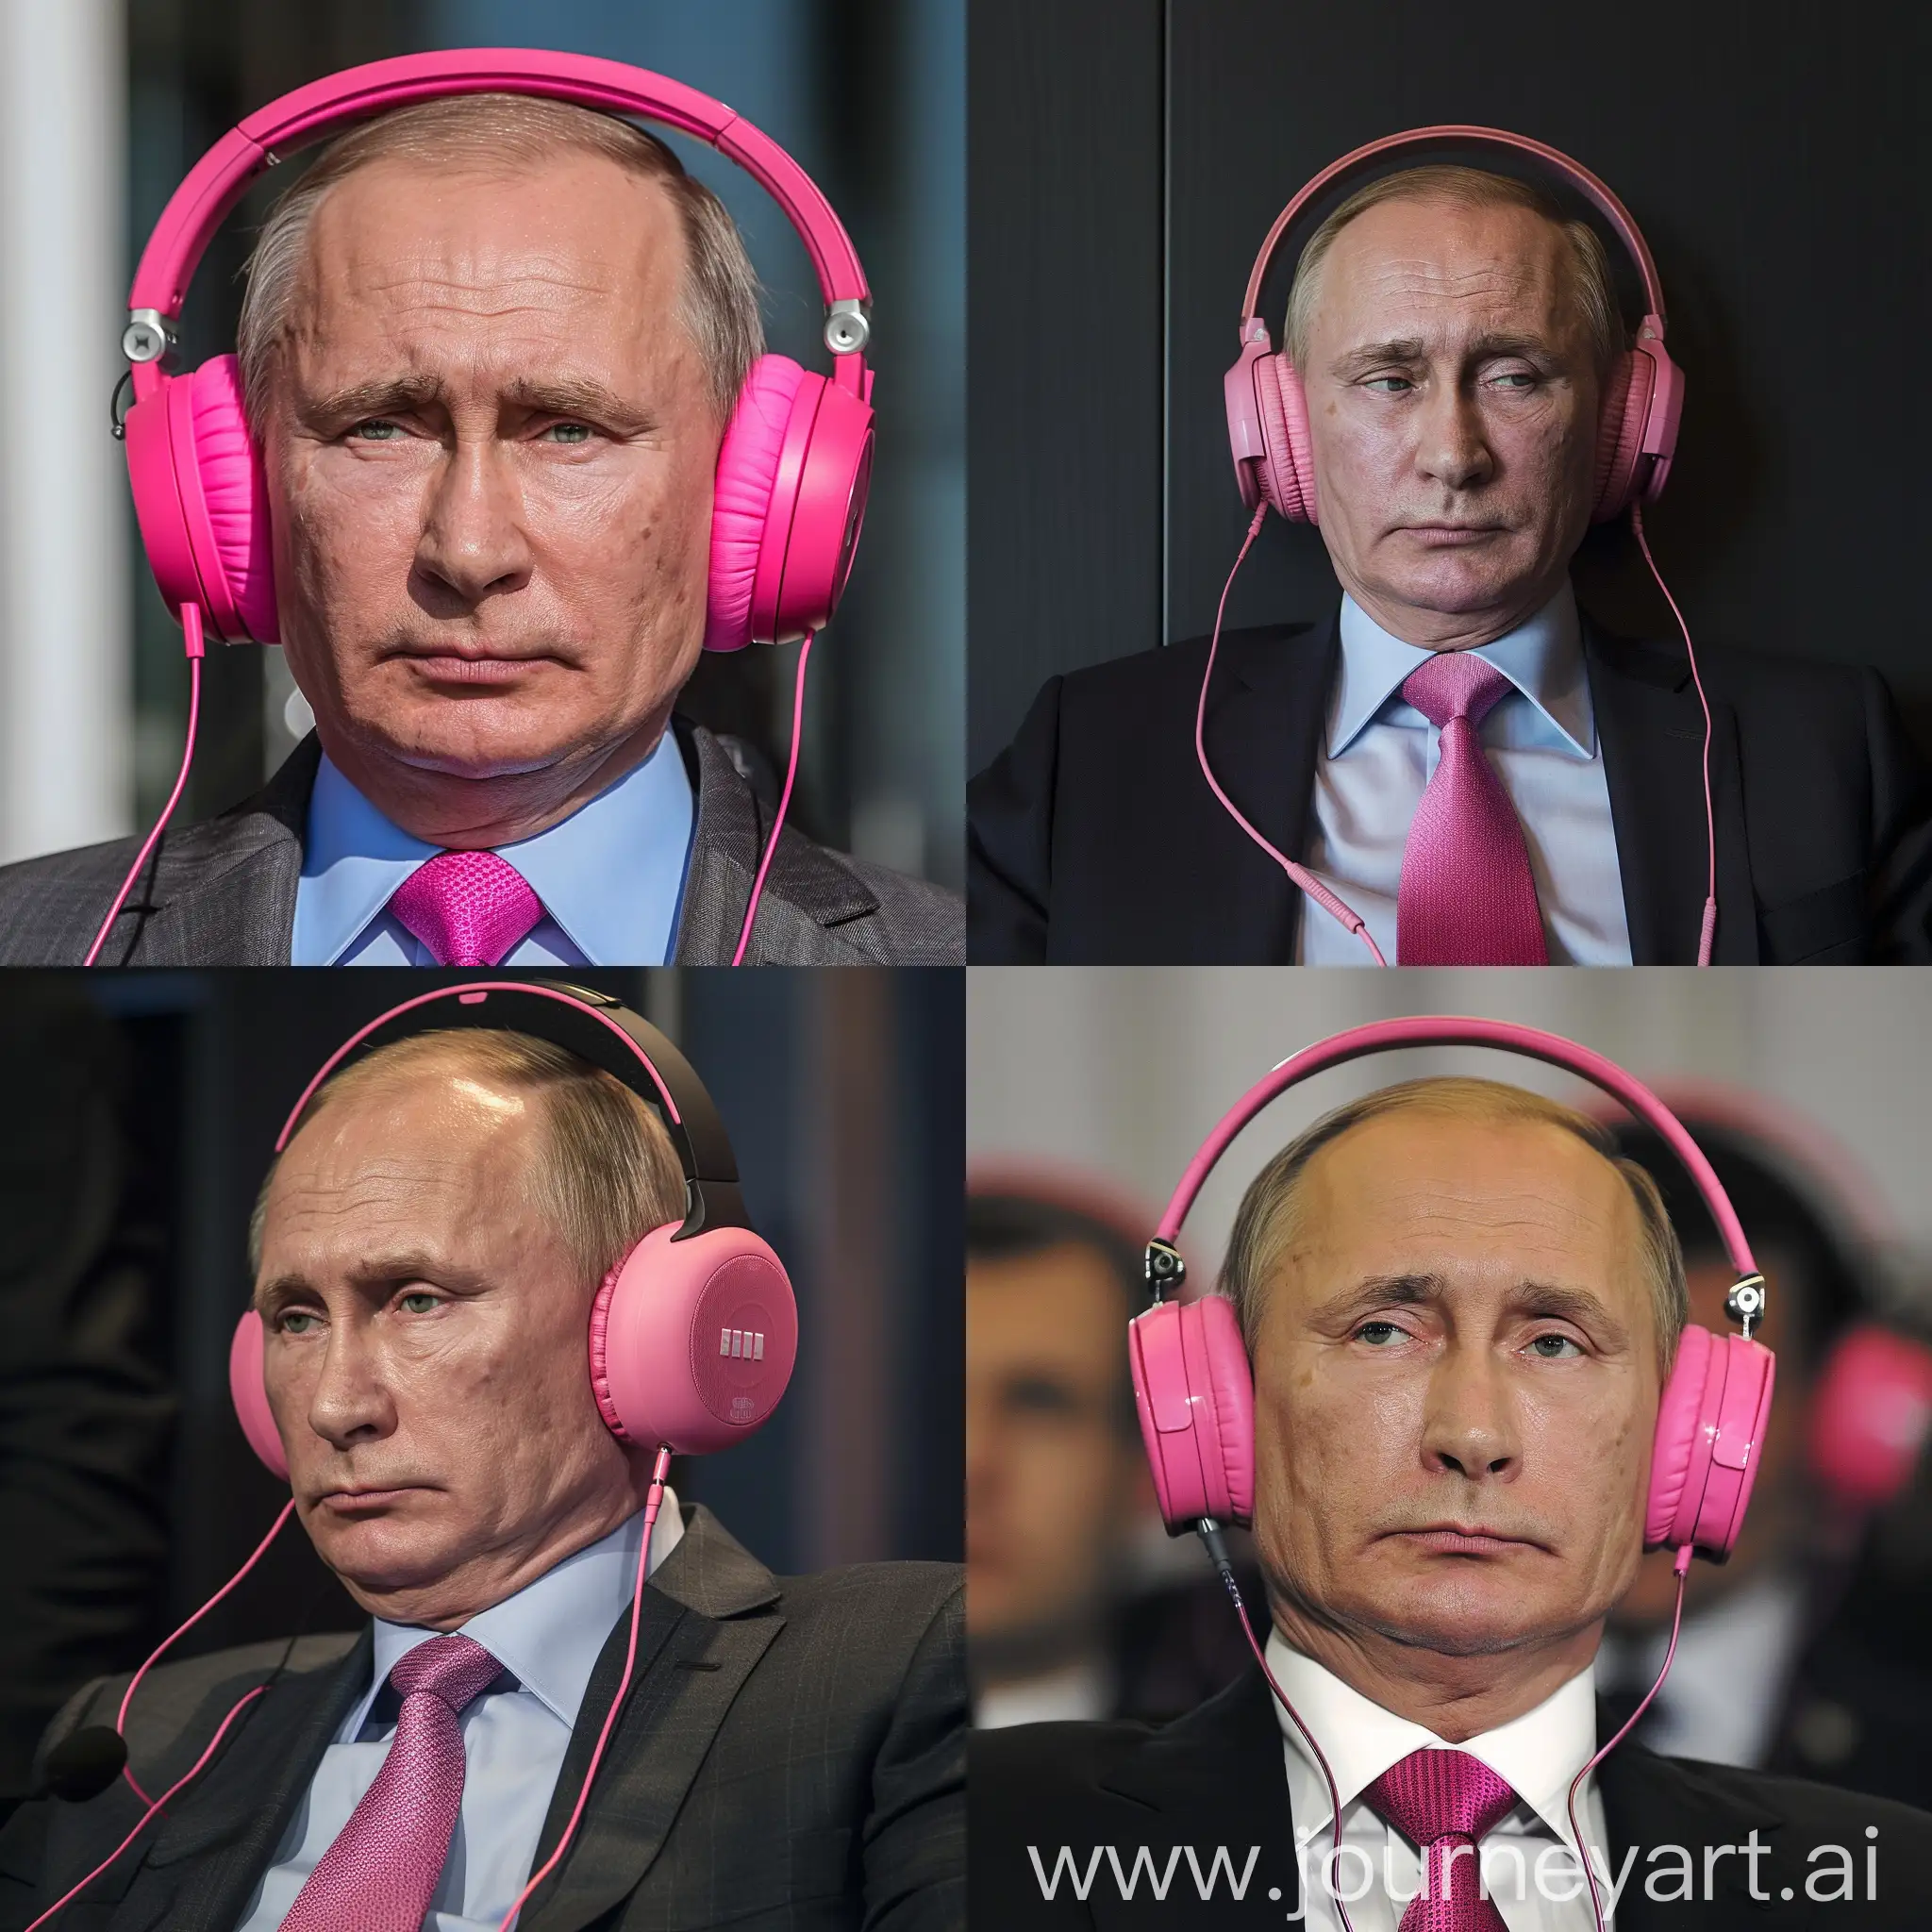 Putin in pink headphones